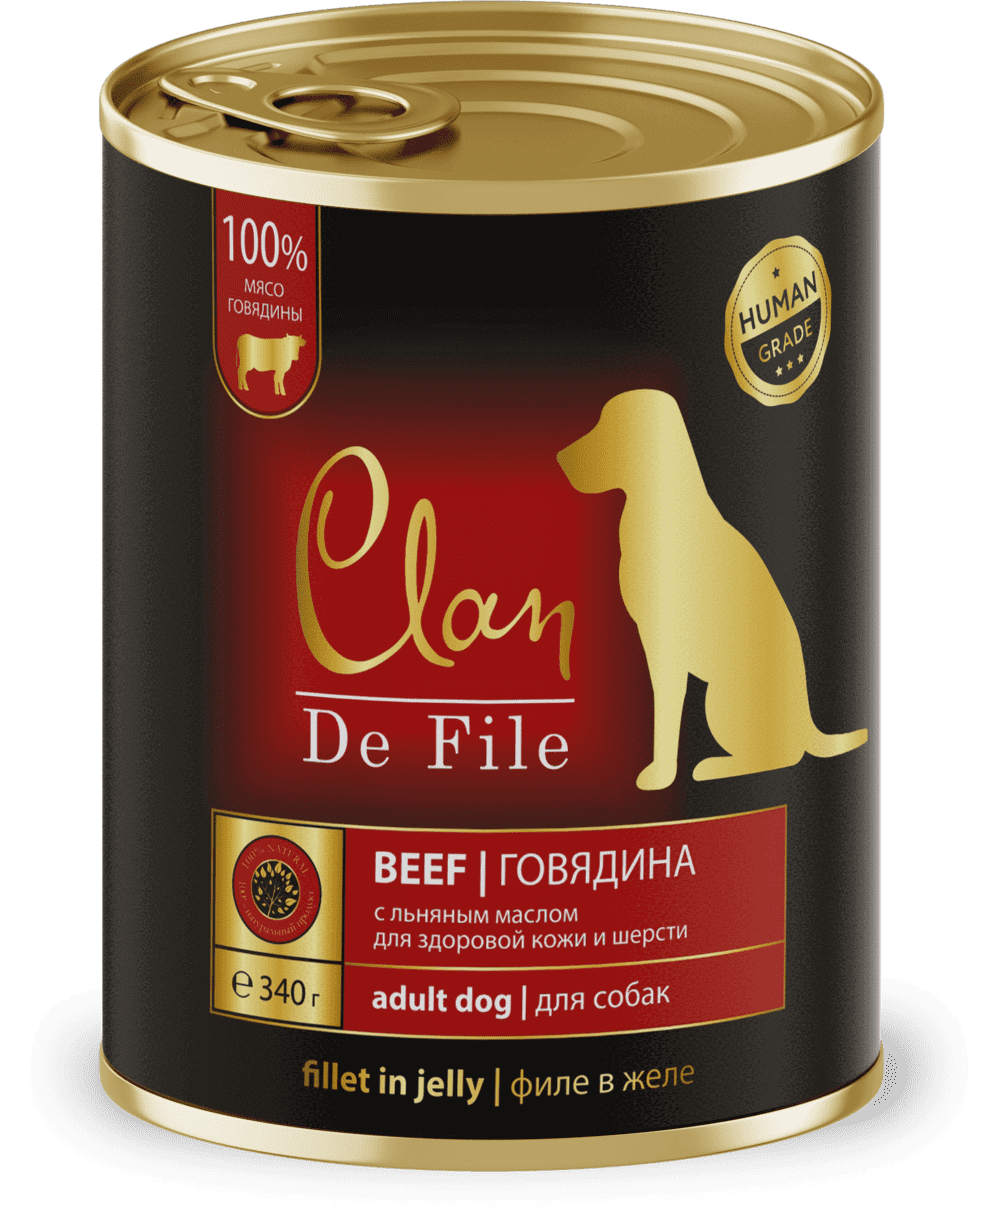 Clan De File Консервы для собак (говядина)